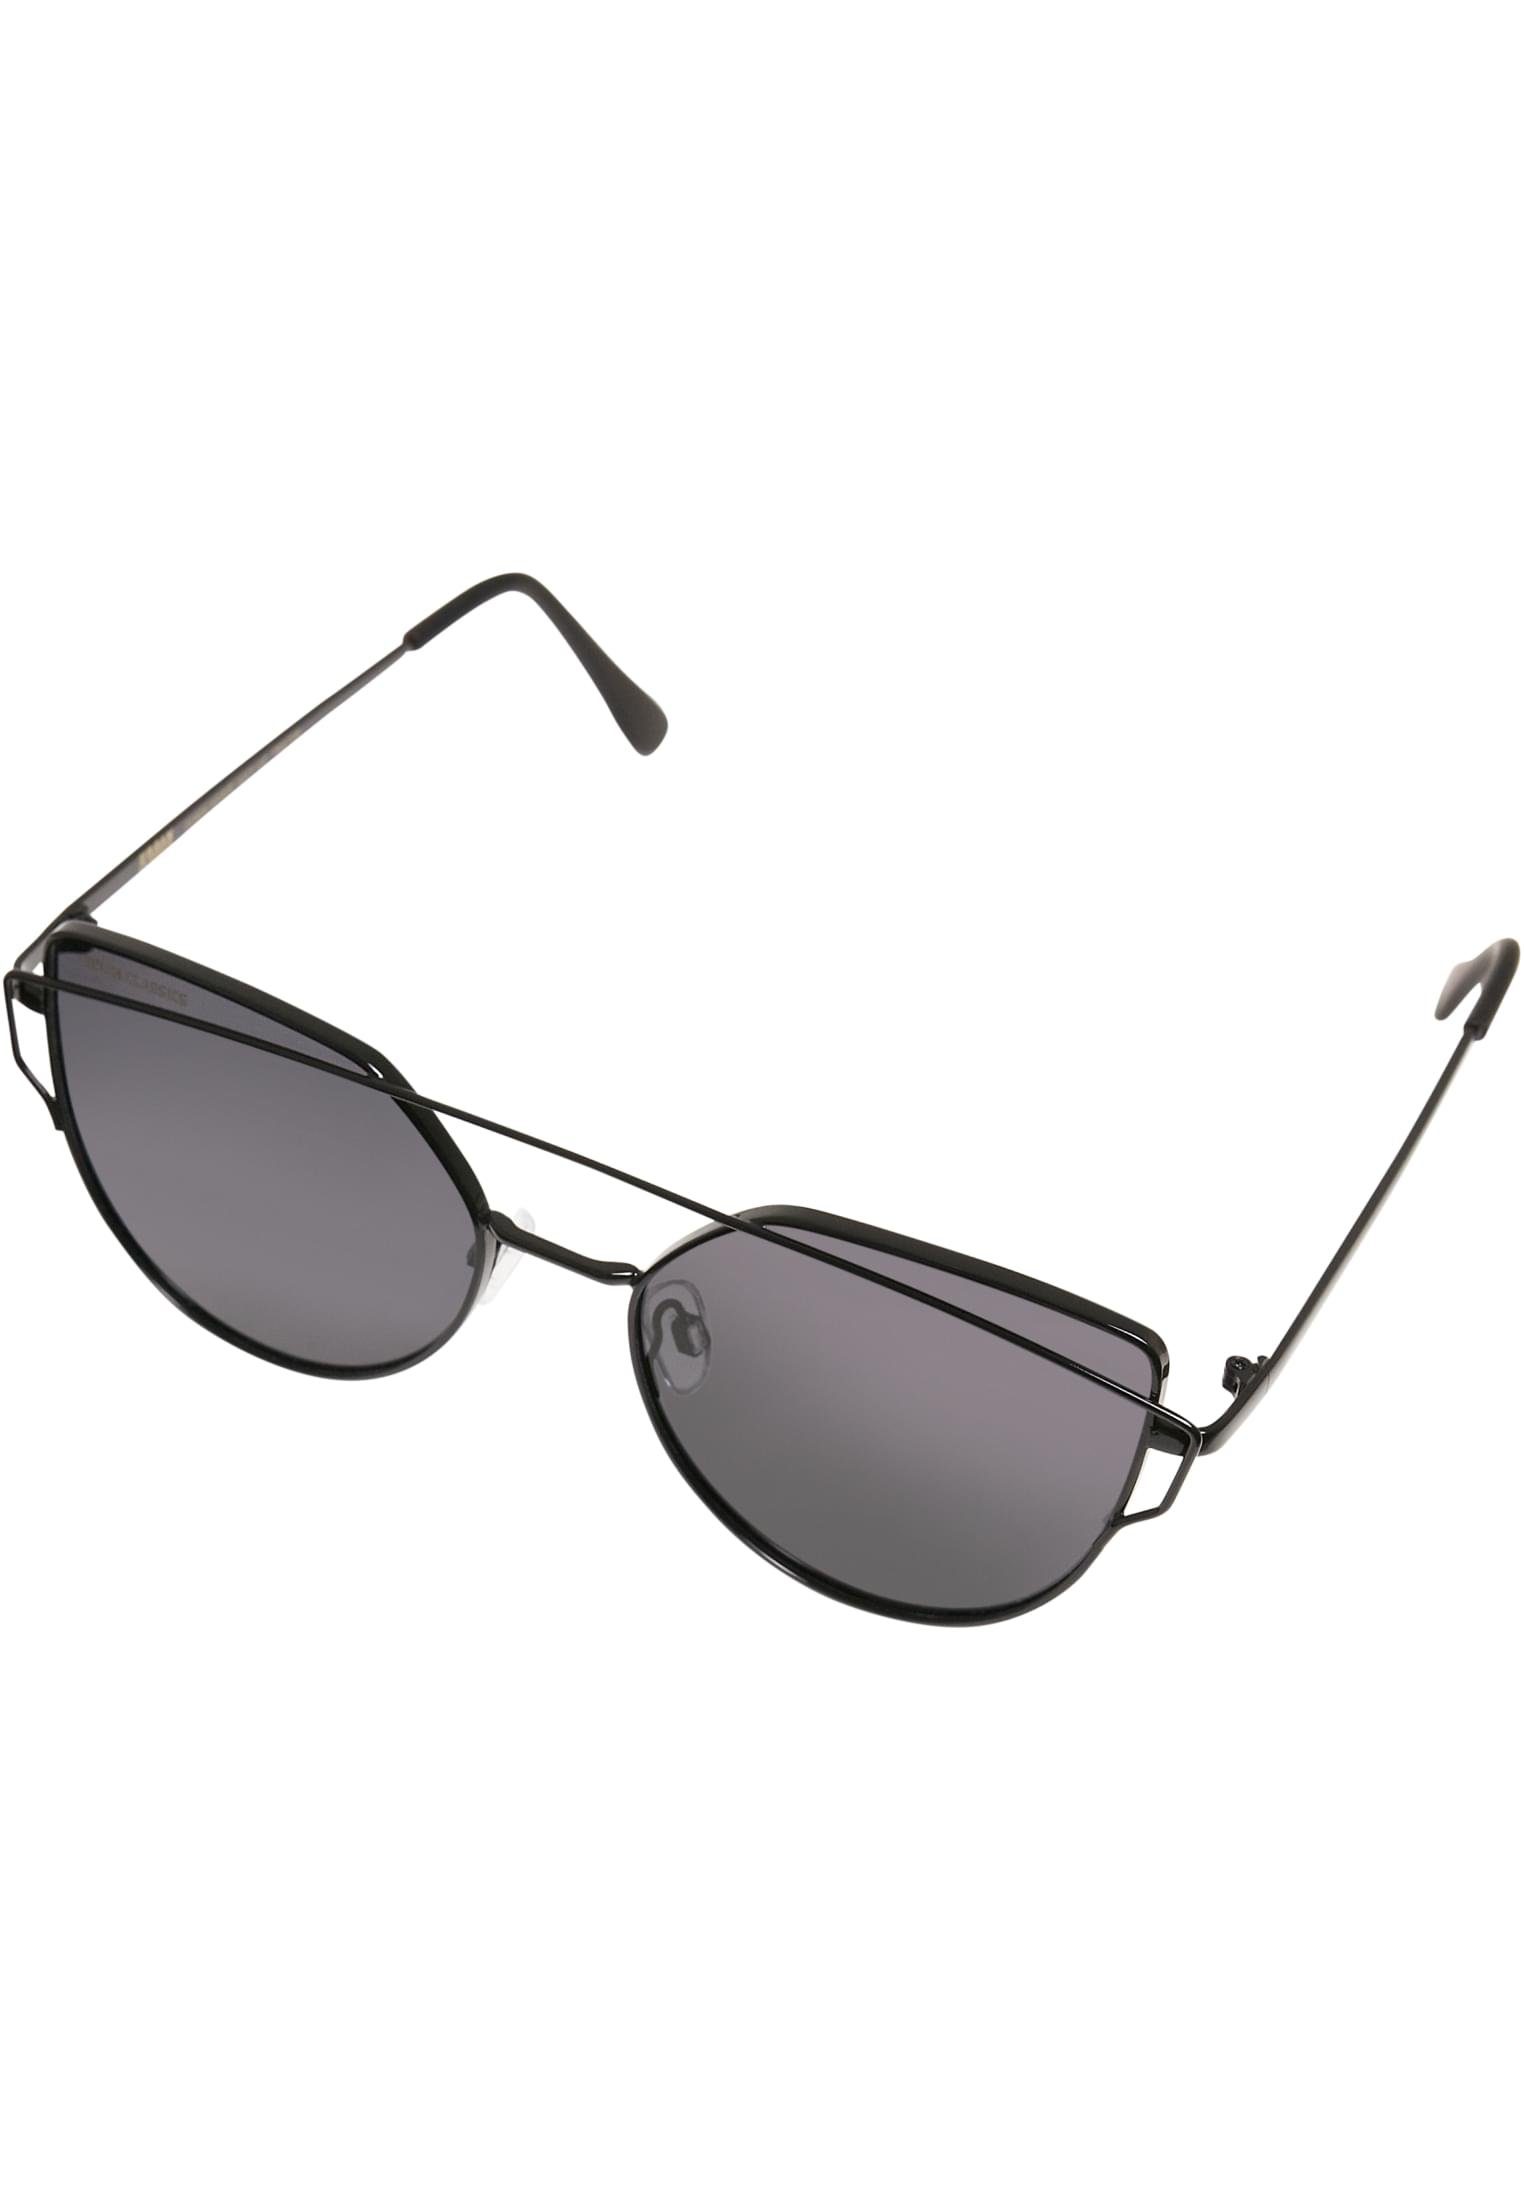 Sunglasses UC July CLASSICS URBAN Sonnenbrille Accessoires black